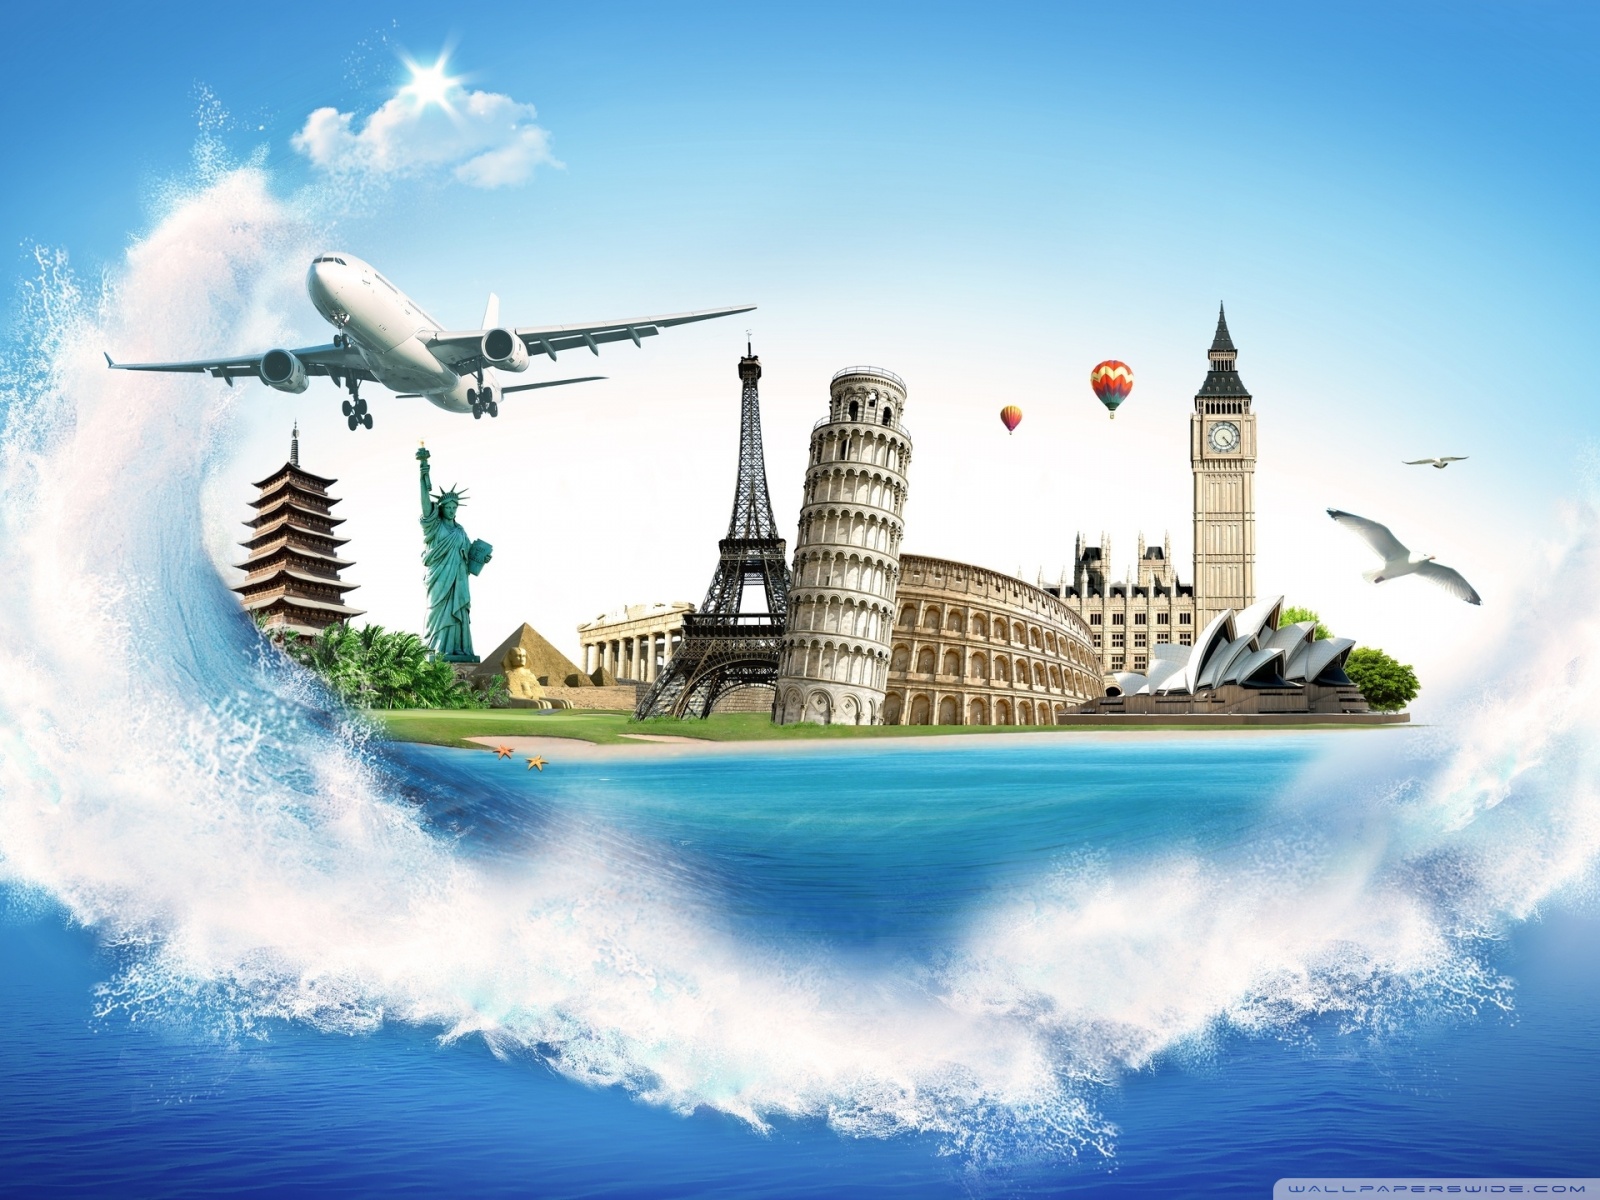 fond d'écran de voyage,illustration,compagnie aérienne,véhicule,avion,voyage